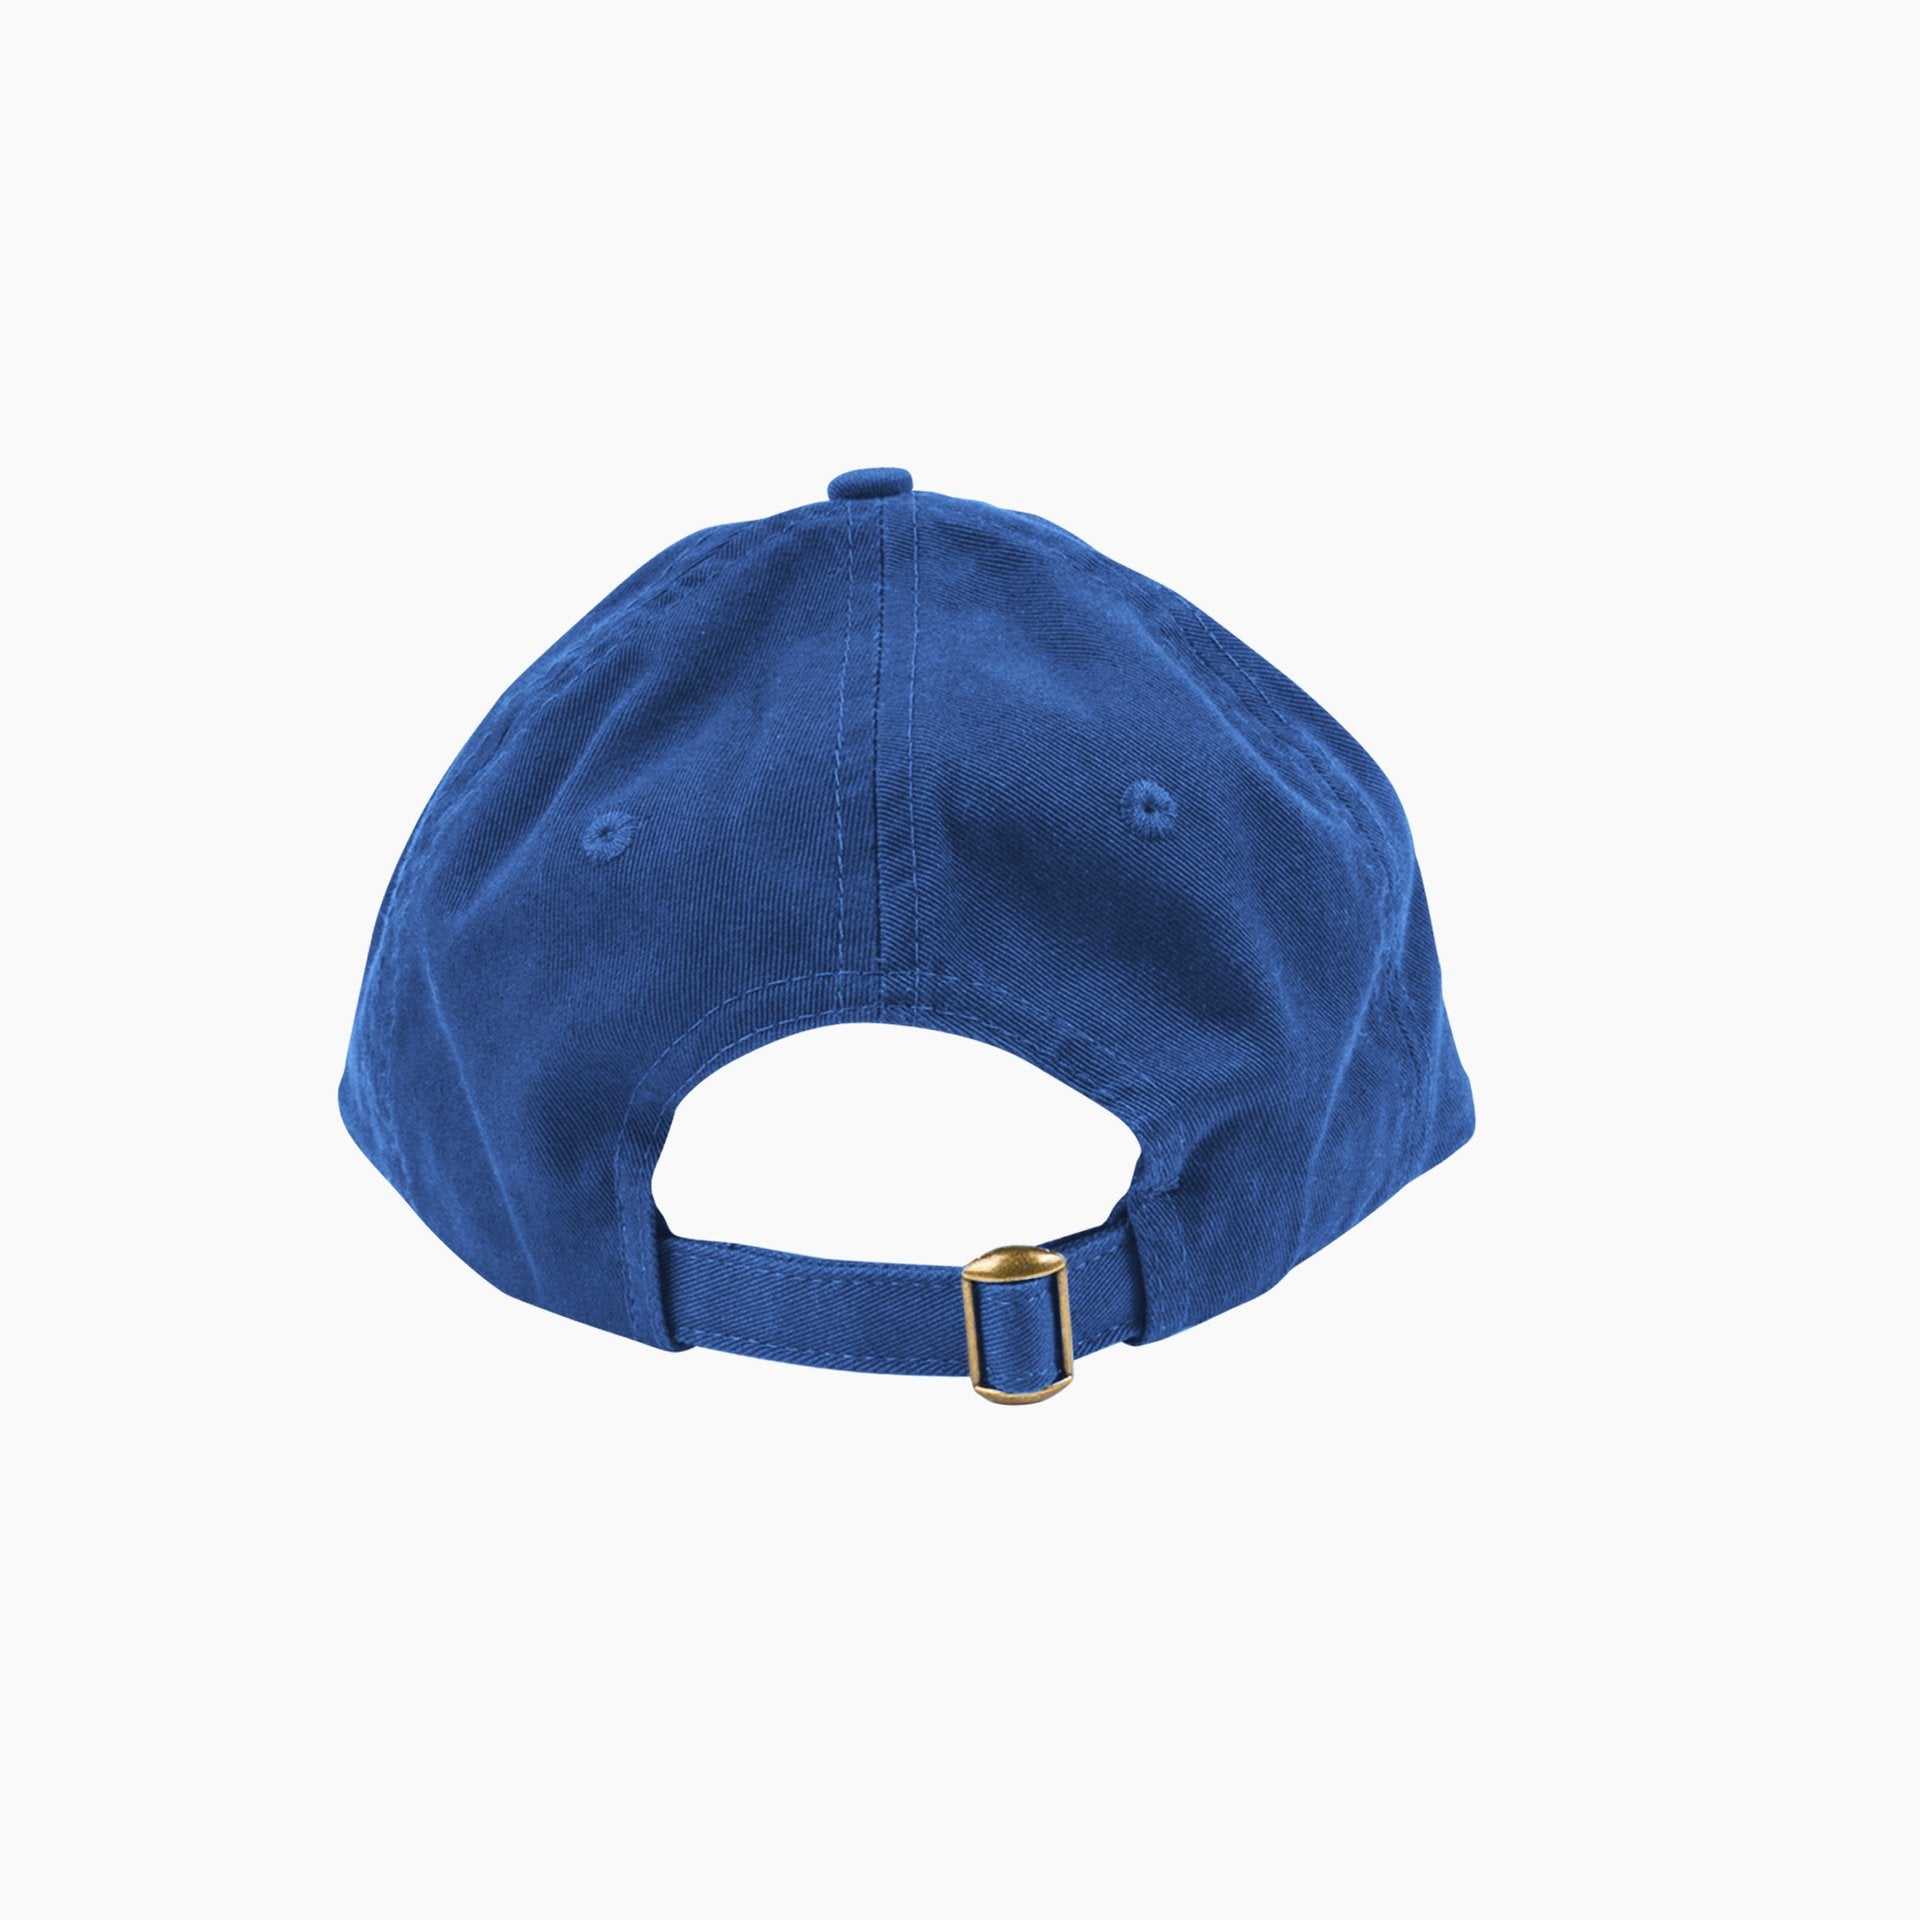 Poketo Thinking Cap in Blue